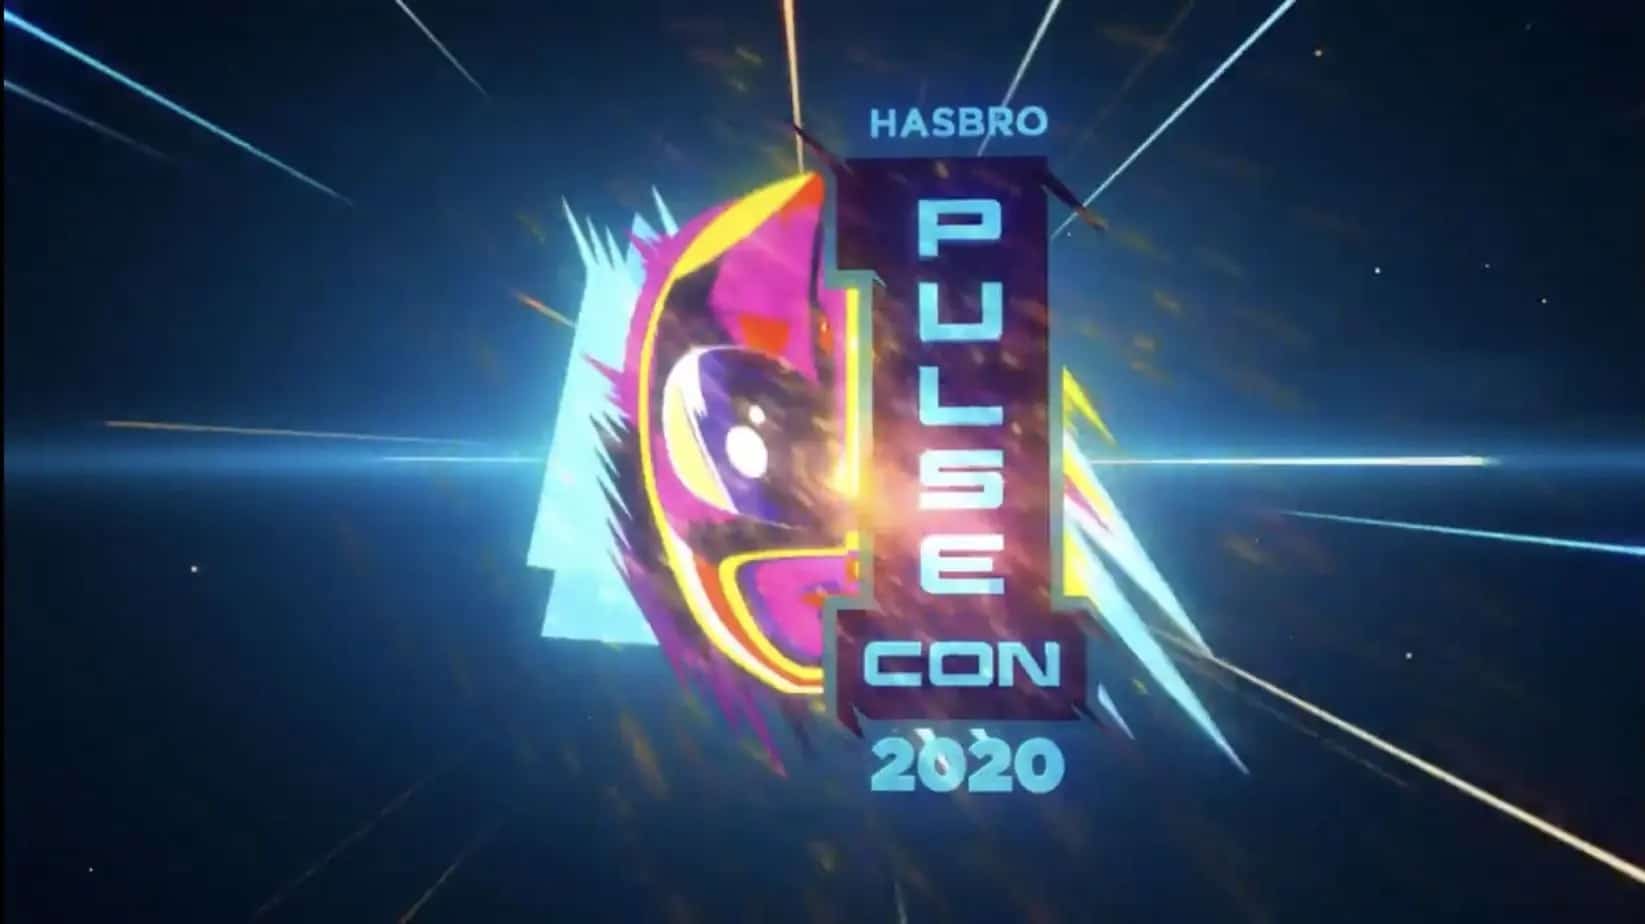 Hasbro Pulse Con 2020 Ranger